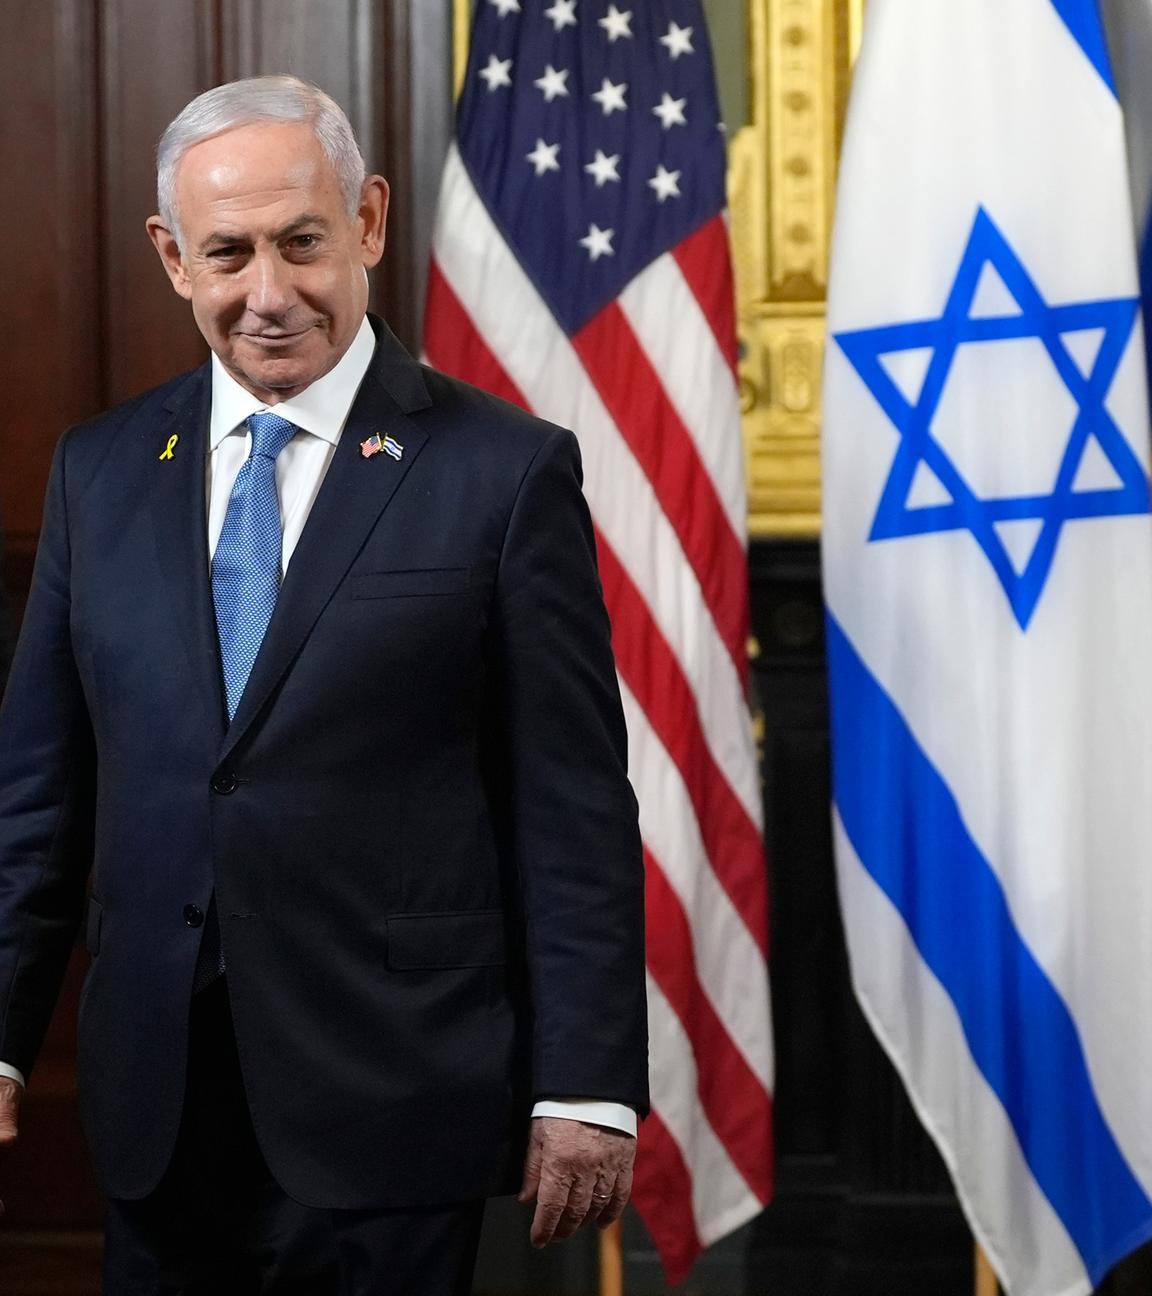 Der israelische Ministerpräsident Benjamin Netanjahu steht vor der israelischen und amerikanischen Flaggen  im Eisenhower Executive Office Building im Weißen Haus.